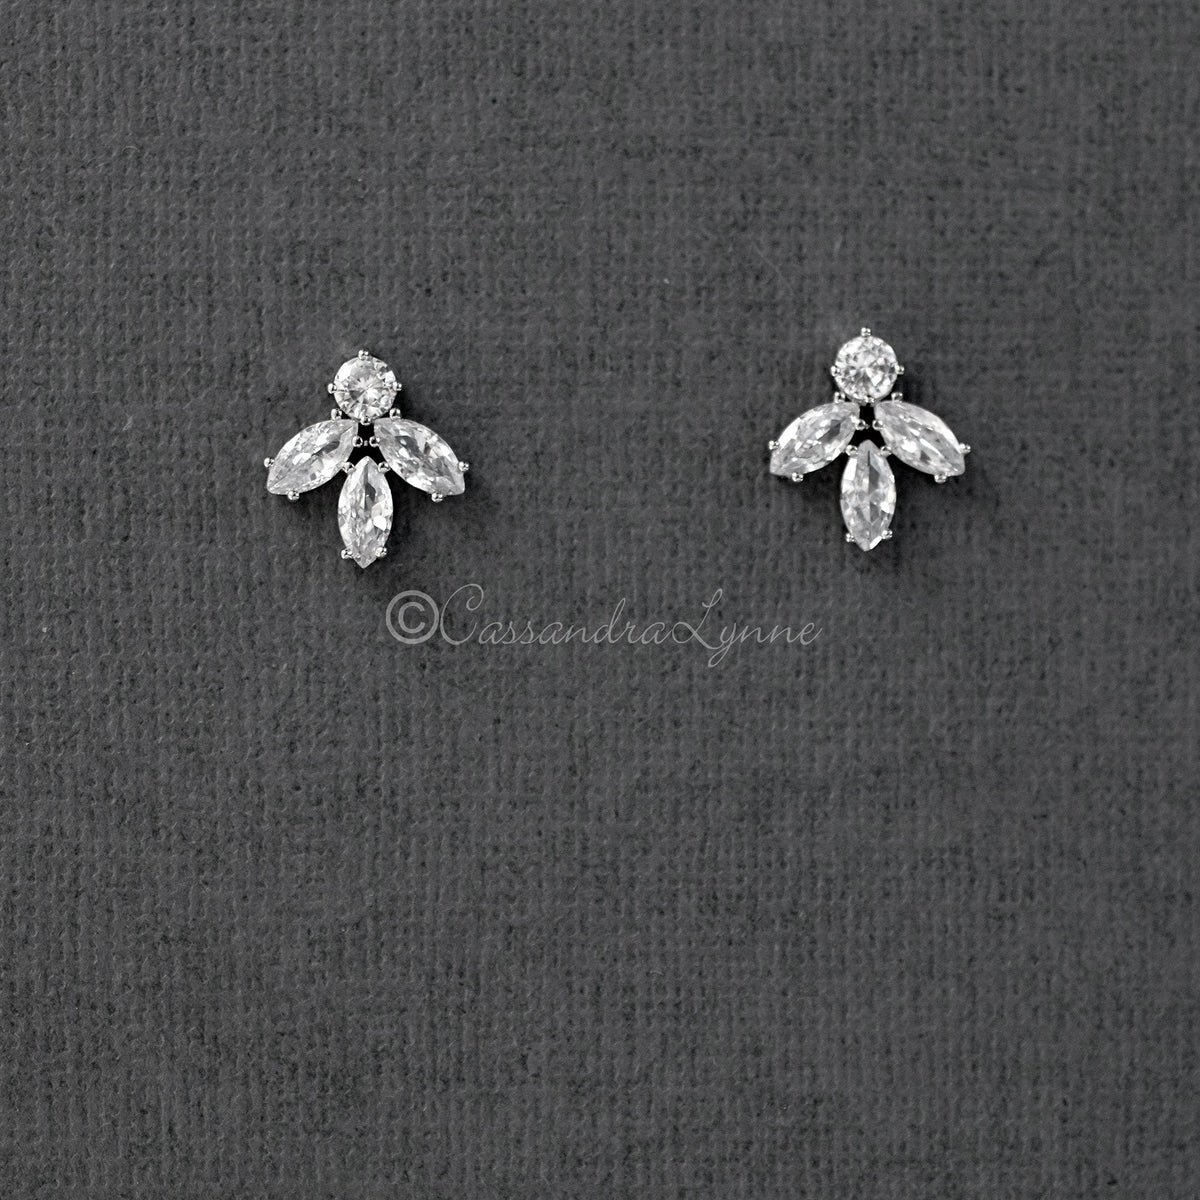 Minimalist Marquise Leaf CZ Stud Earrings - Cassandra Lynne